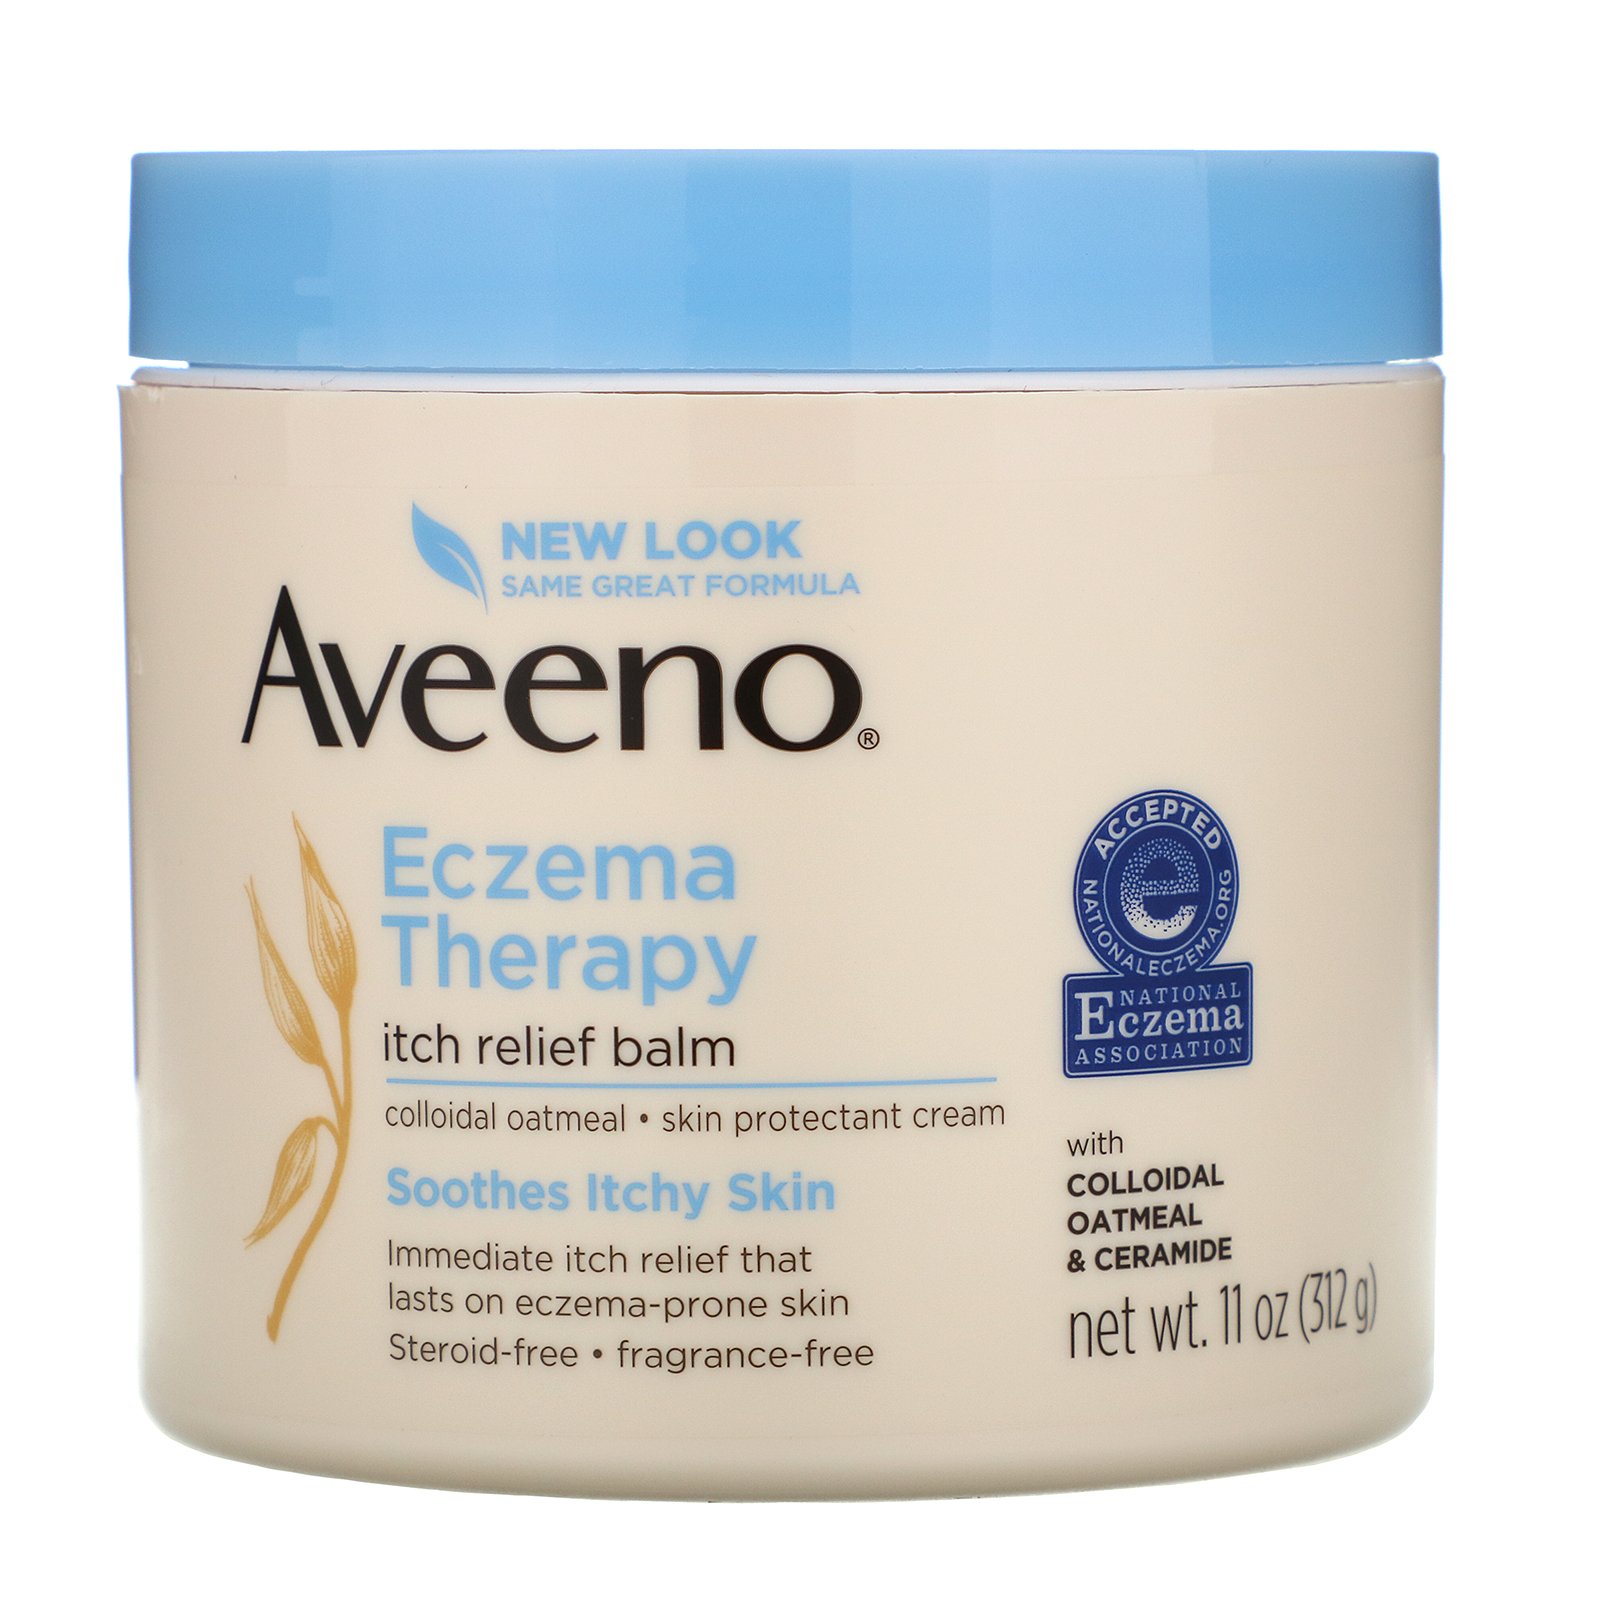 Aveeno Eczema Therapy Itch Relief Balm 11 oz 312 g ...